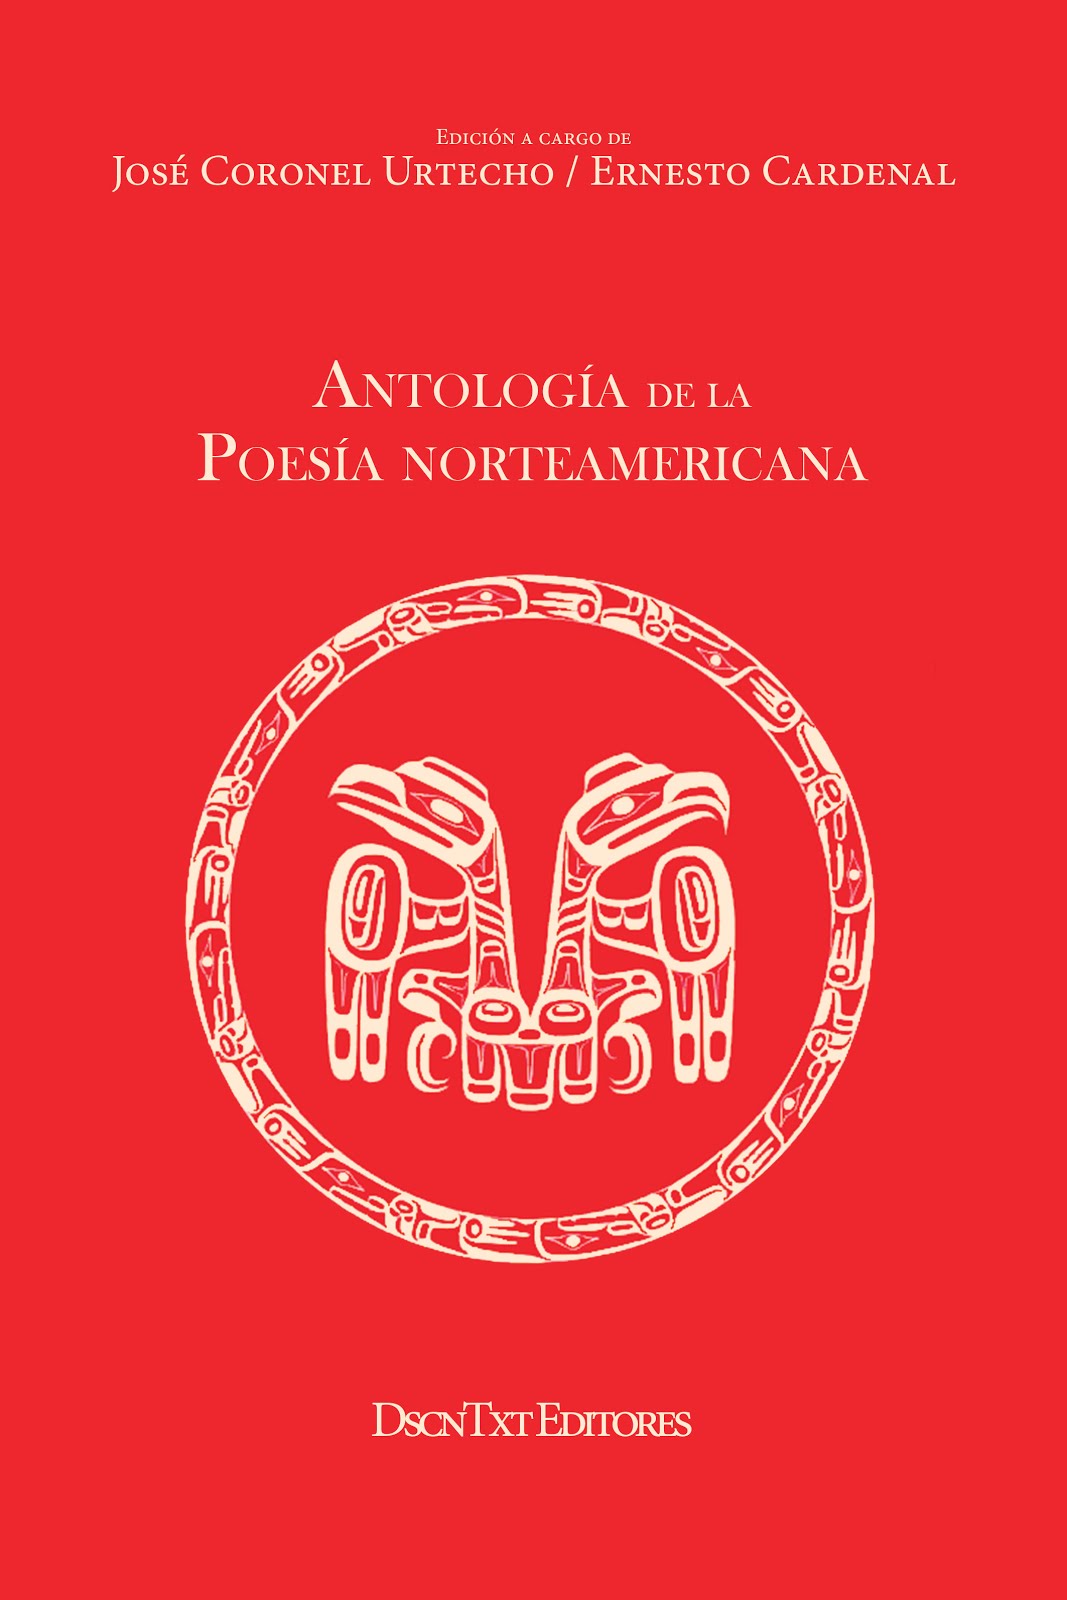 Antología de la Poesía Norteamericana. Edición de José Coronel Urtecho y Ernesto Cardenal